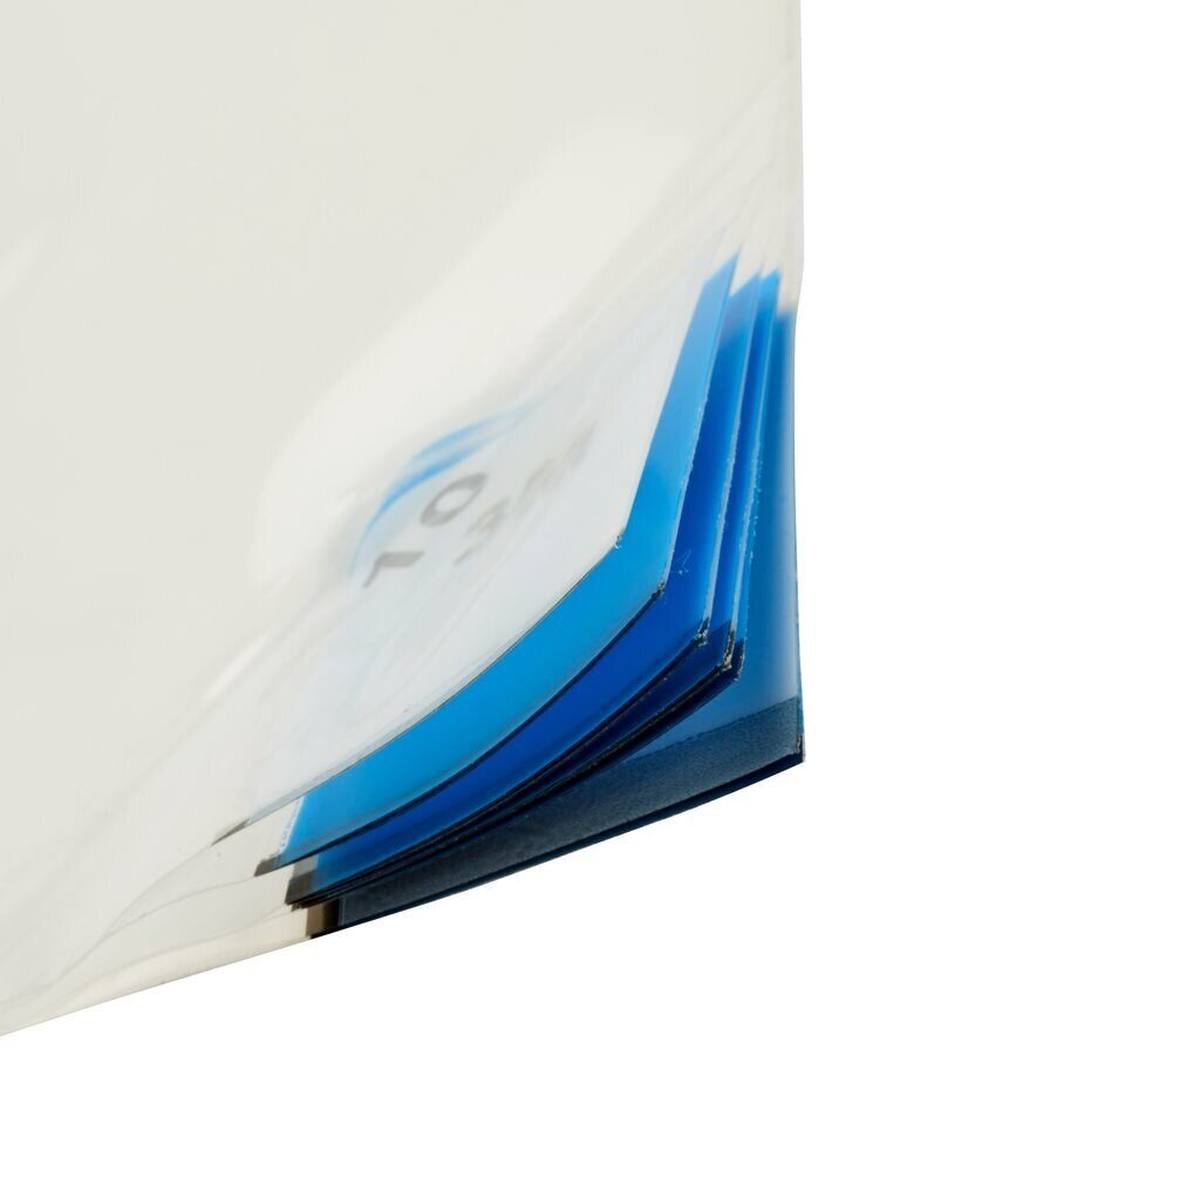 3M 4300 Nomad Feinstaub Adhäsivmatte, weiß, 1,15m x 0,45m, 40Stück transparent Polyethylen-Schichten